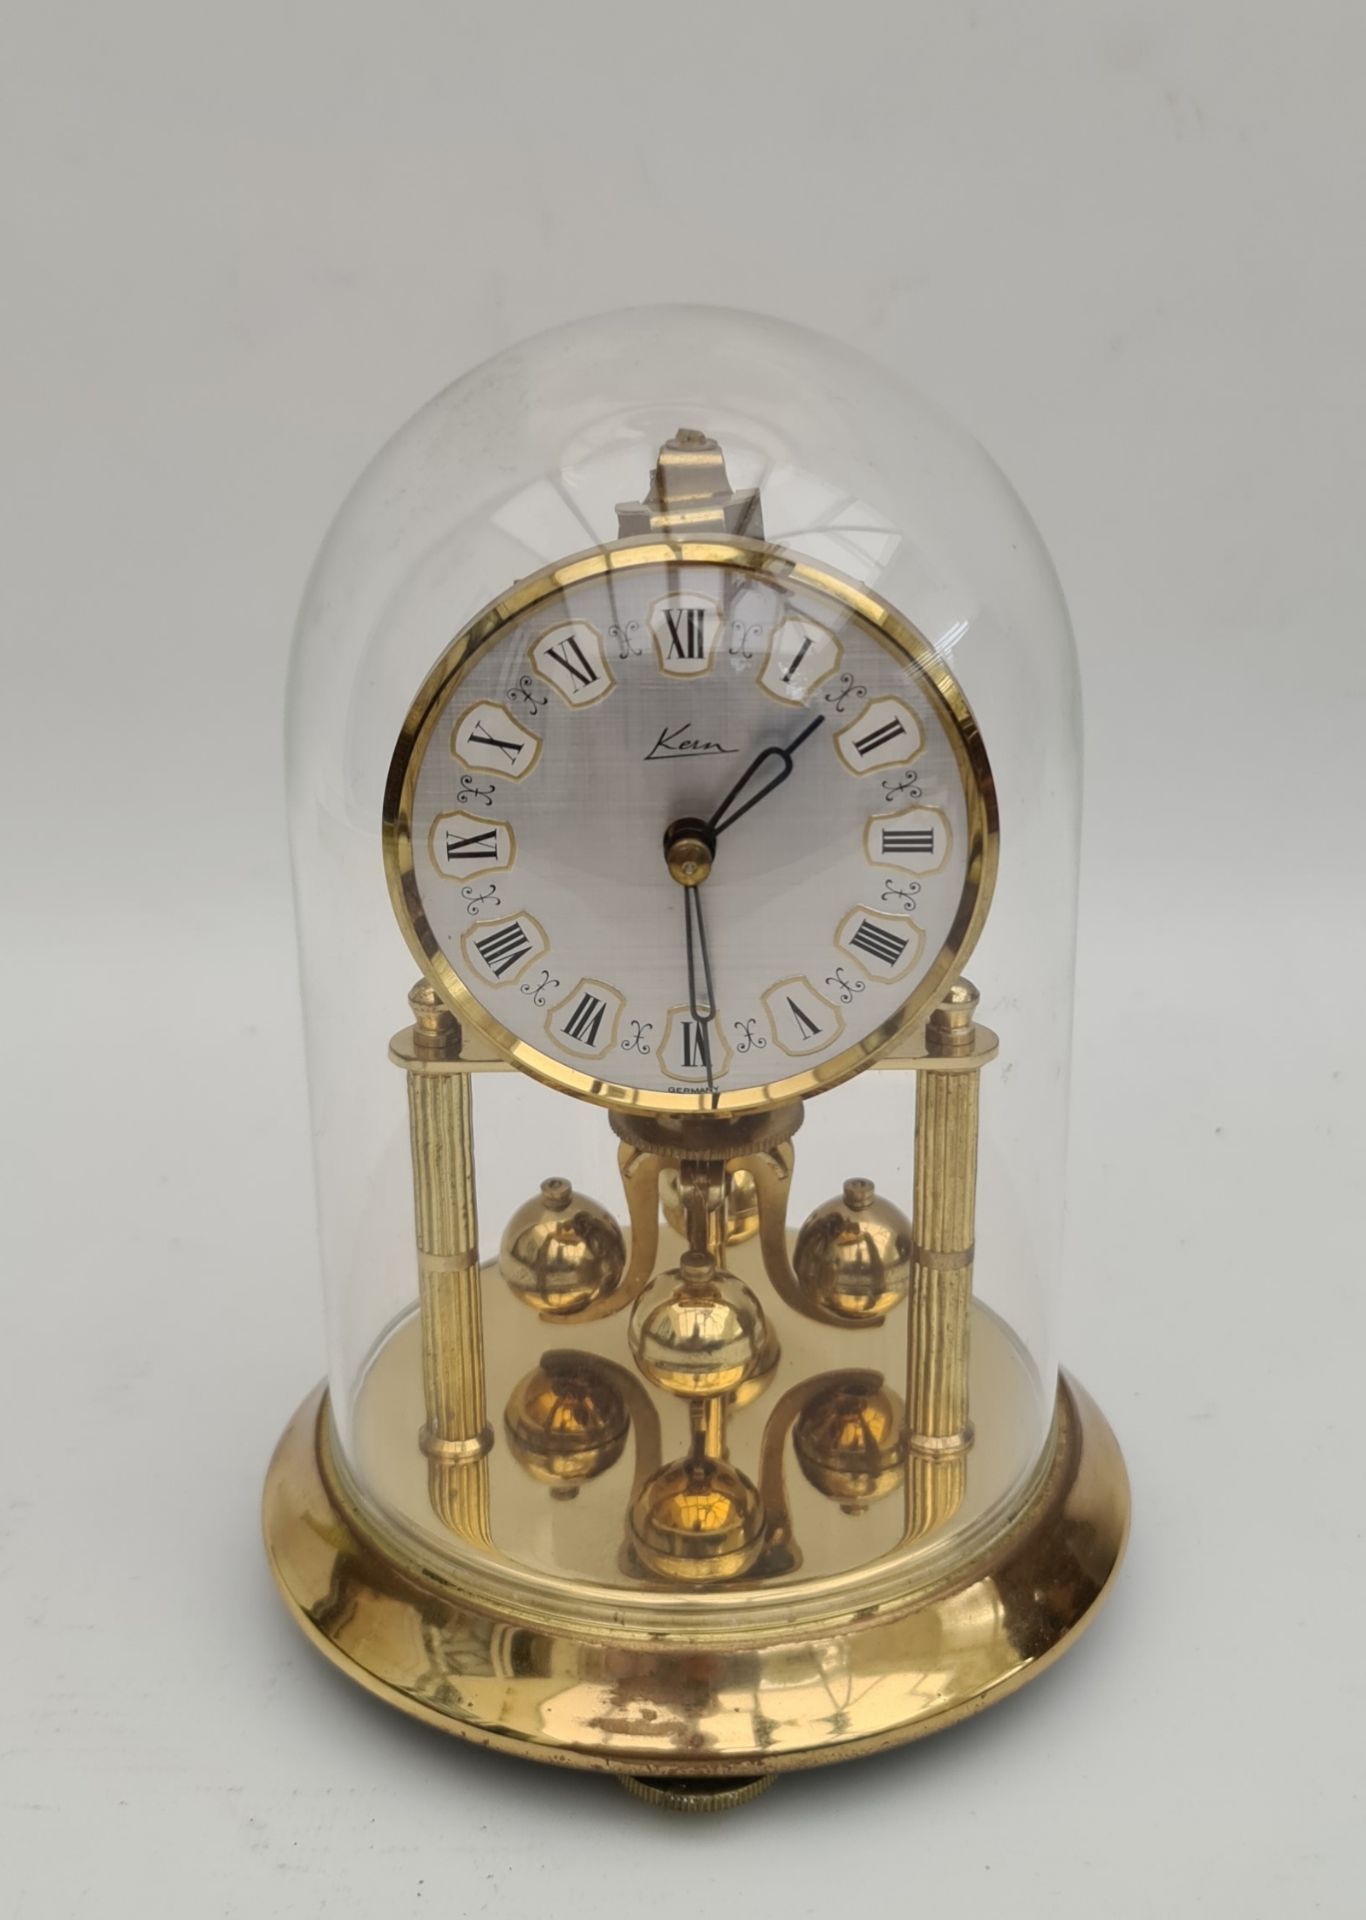 Vintage Domed Mantel Clock German Make Vintage Domed Mantel Clock German Make.Measures 6 inches